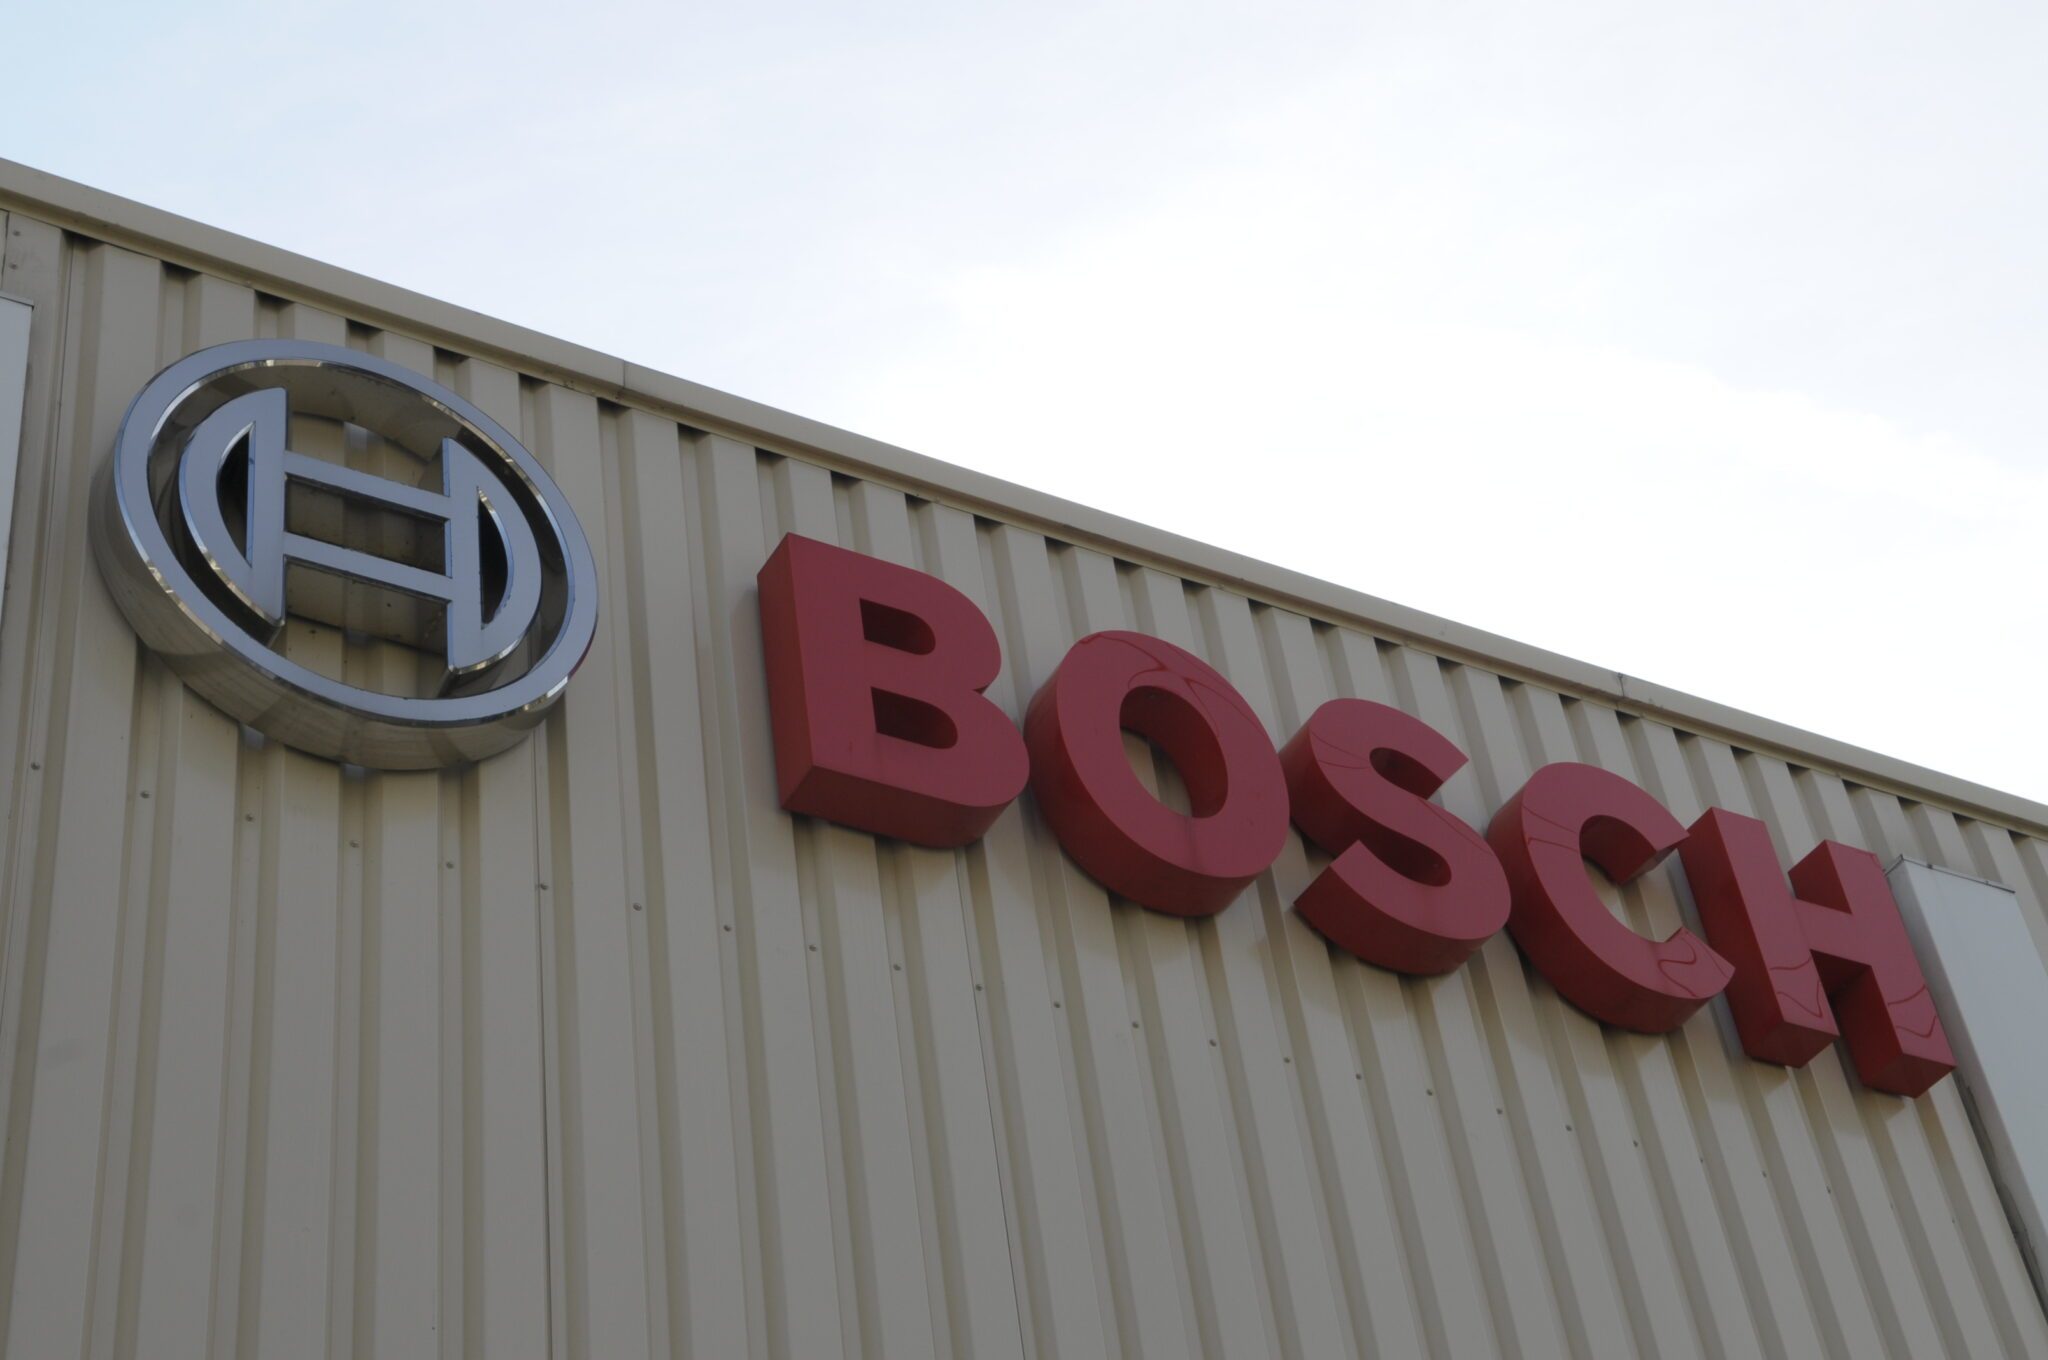 L’établissement Bosch de Vénissieux est à nouveau dans la tourmente.